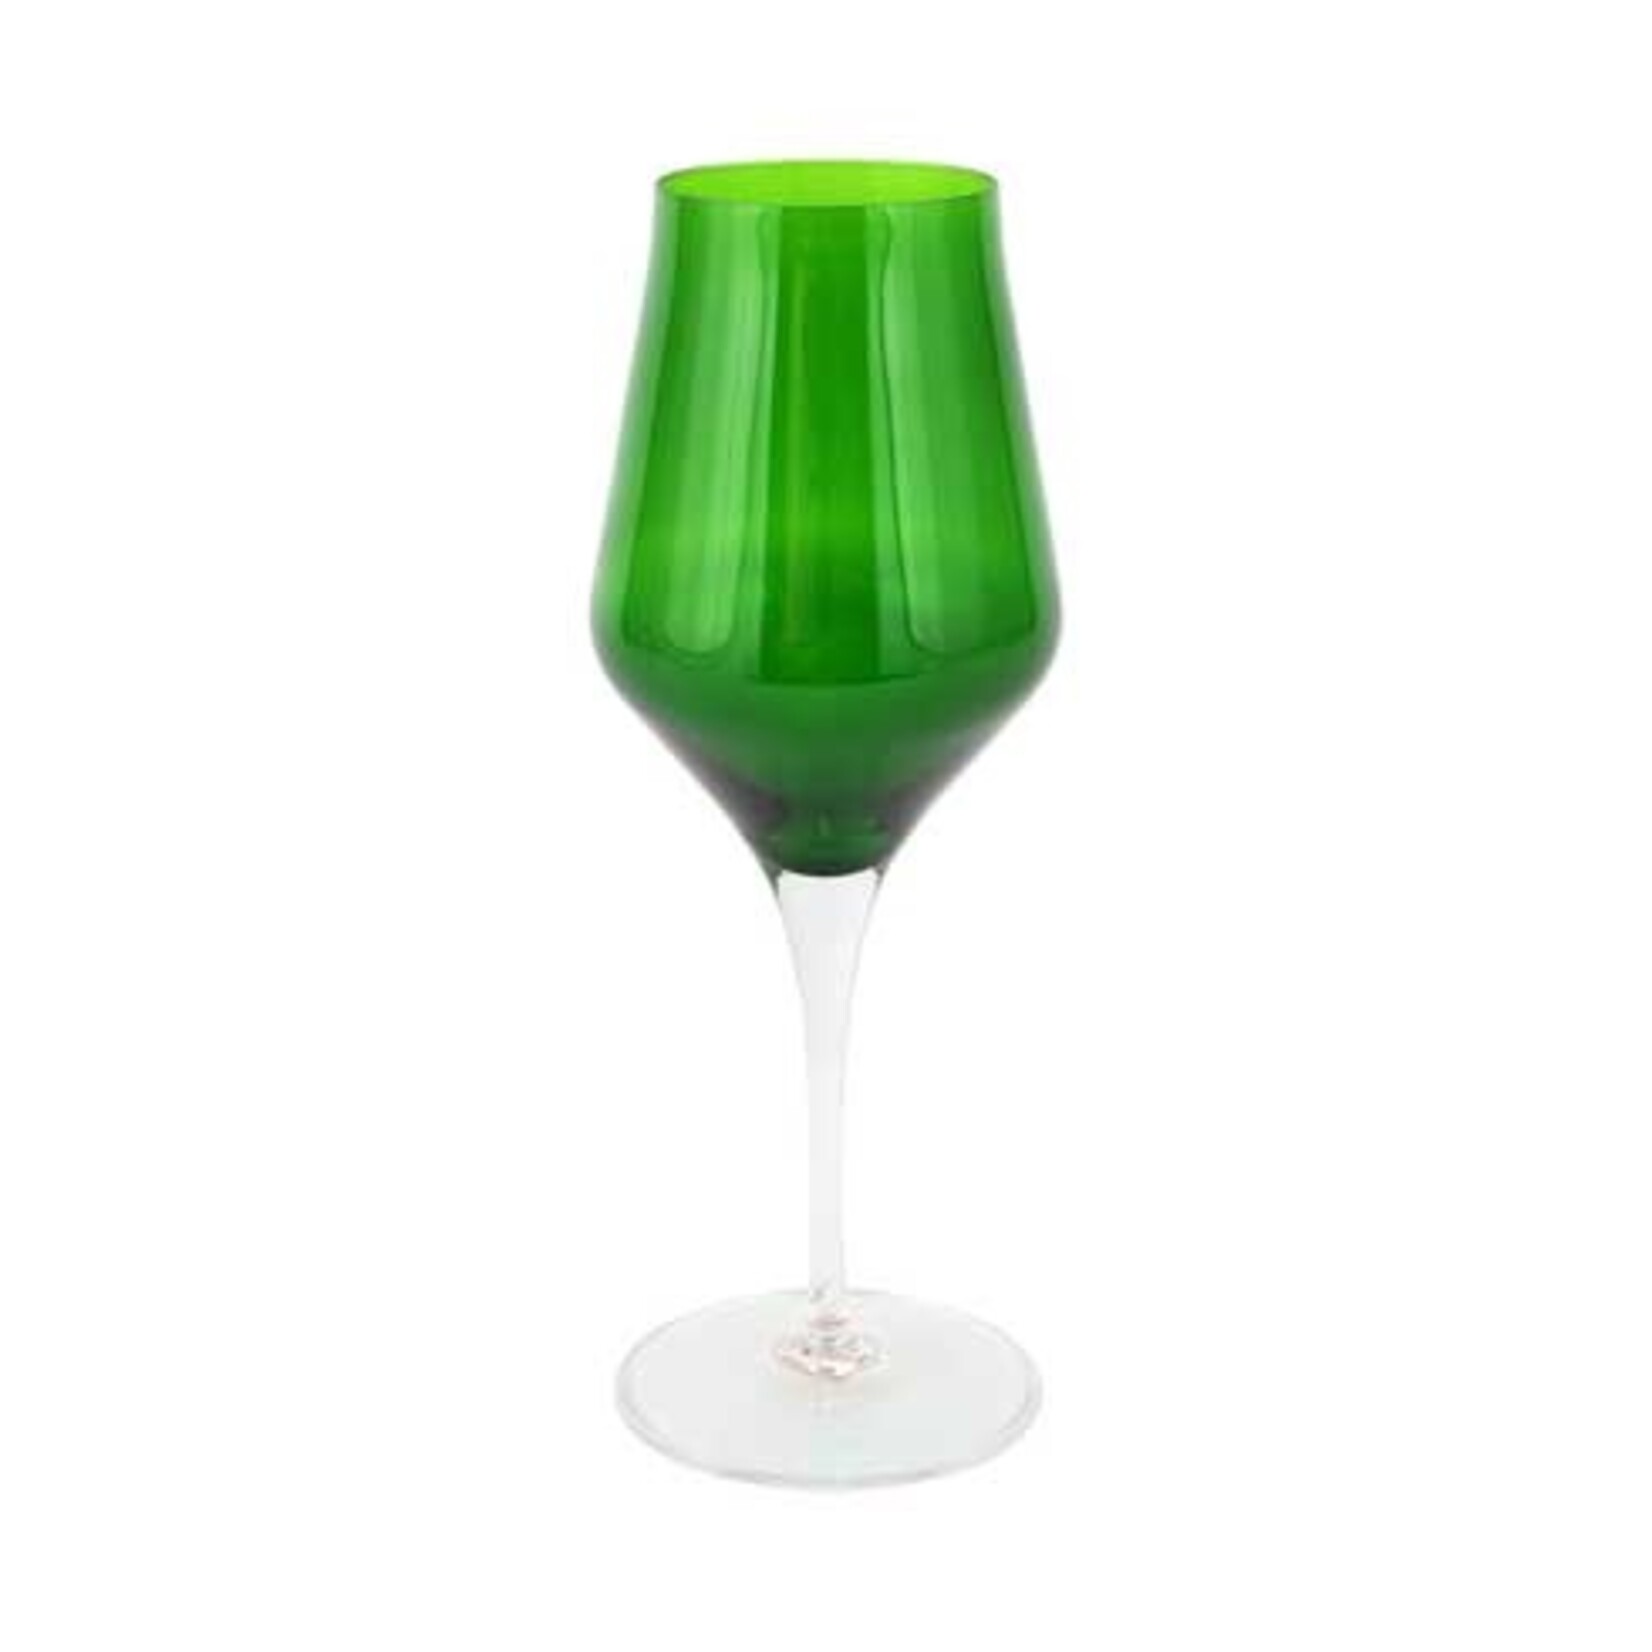 VIETRI Contessa Emerald Water Glass